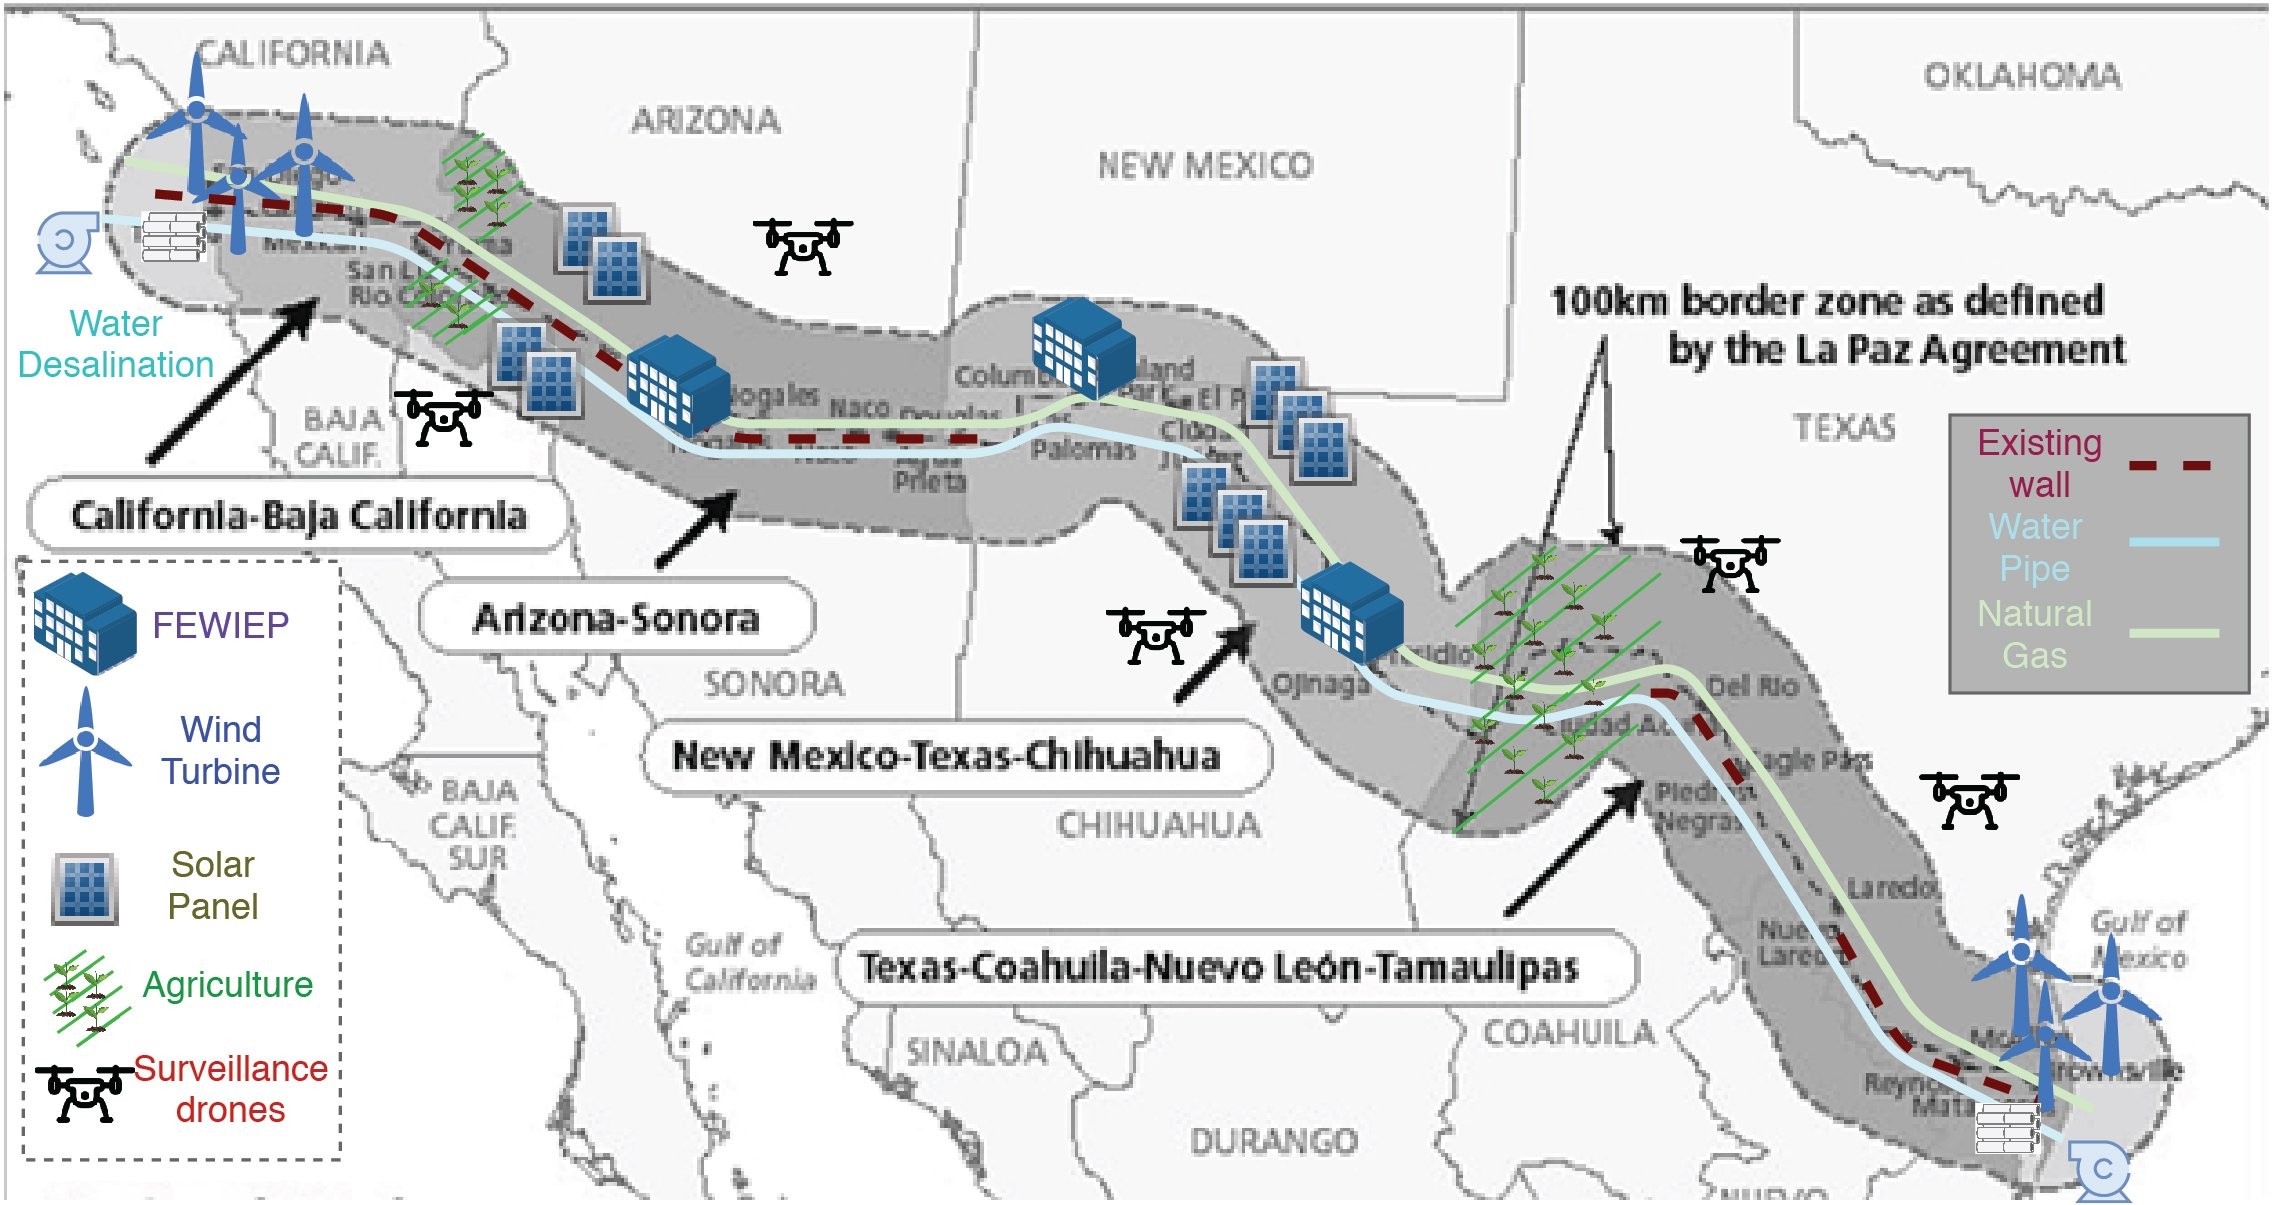 Projeto de muro proposto por cientistas para a fronteira EUA-México, com energia solar e eólica, espaço para agricultura e monitoramento com drones (Foto: Divulgação)